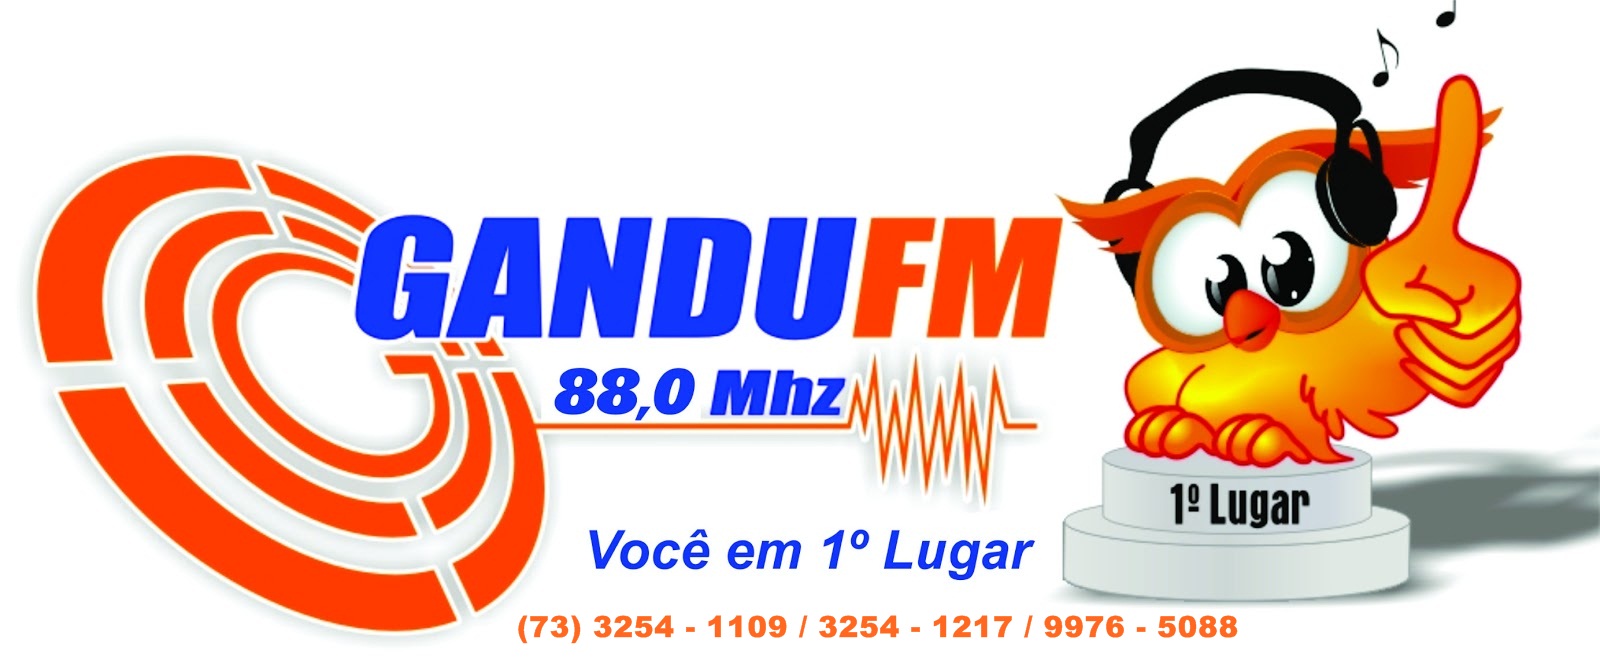 Gandu FM